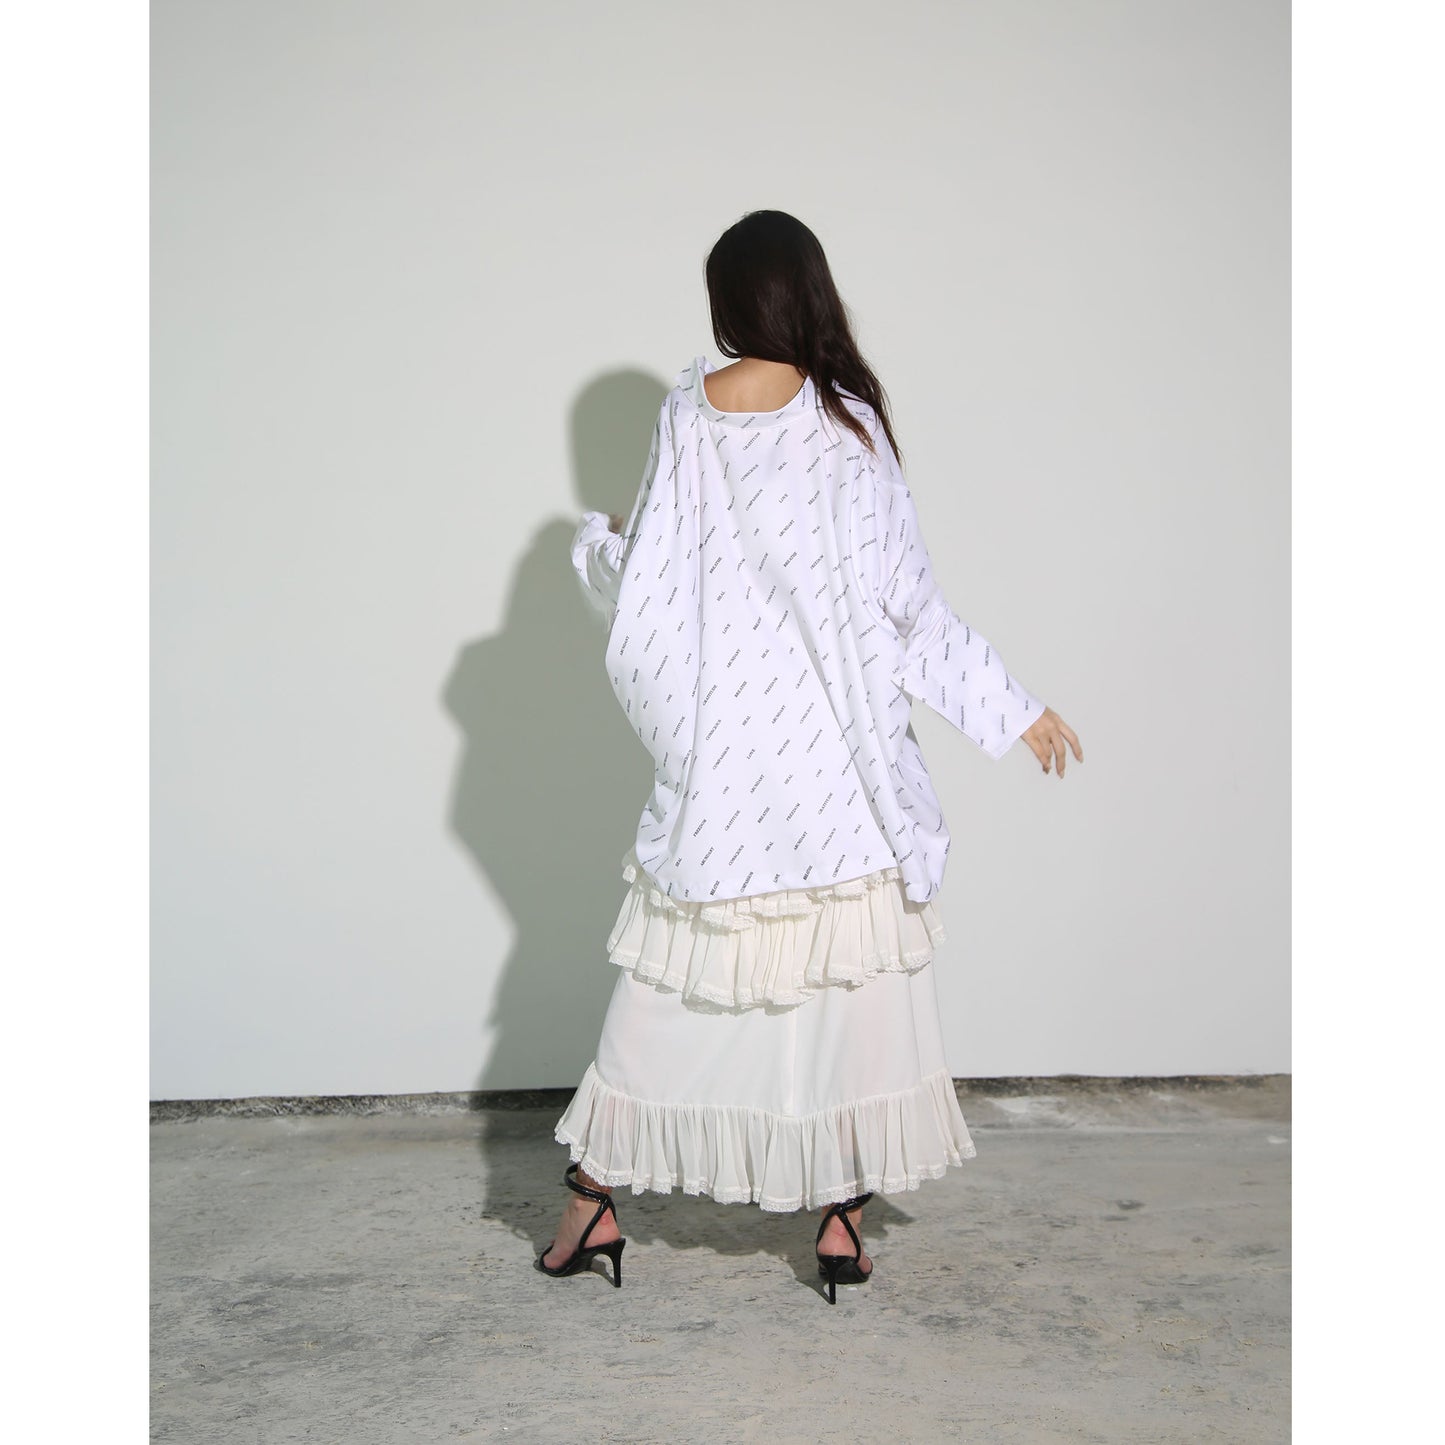 White Modal Jersey Skirt with Lace Ruffle Hem